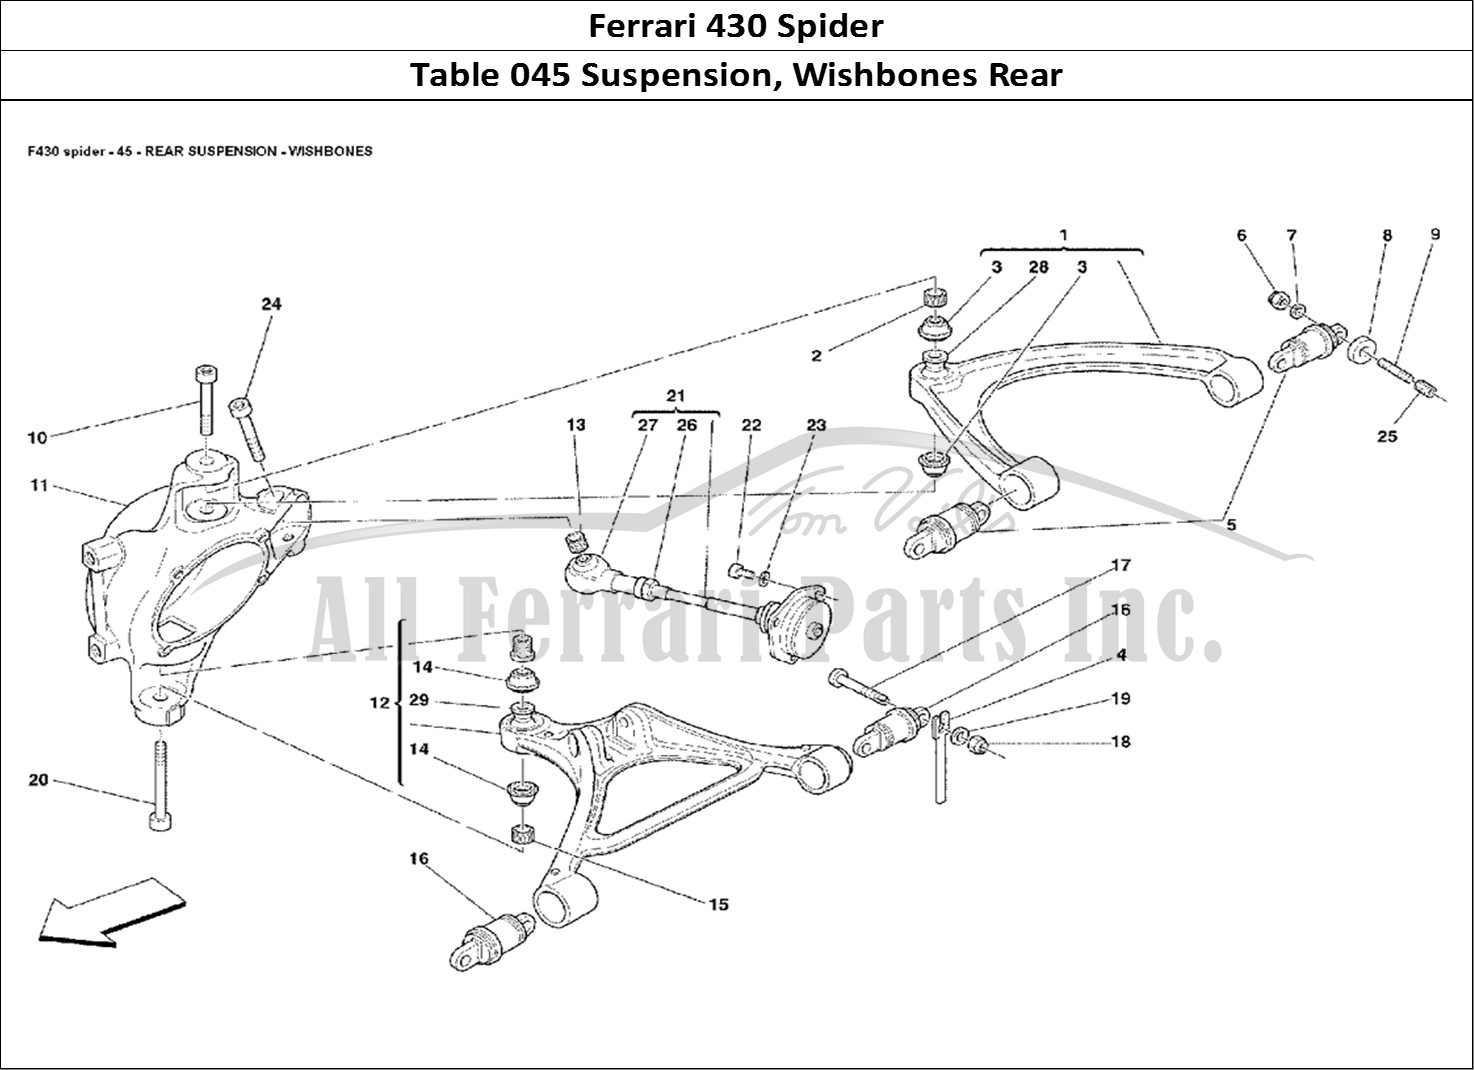 Ferrari Parts Ferrari 430 Spider Page 045 Rear Suspension - Wishbon